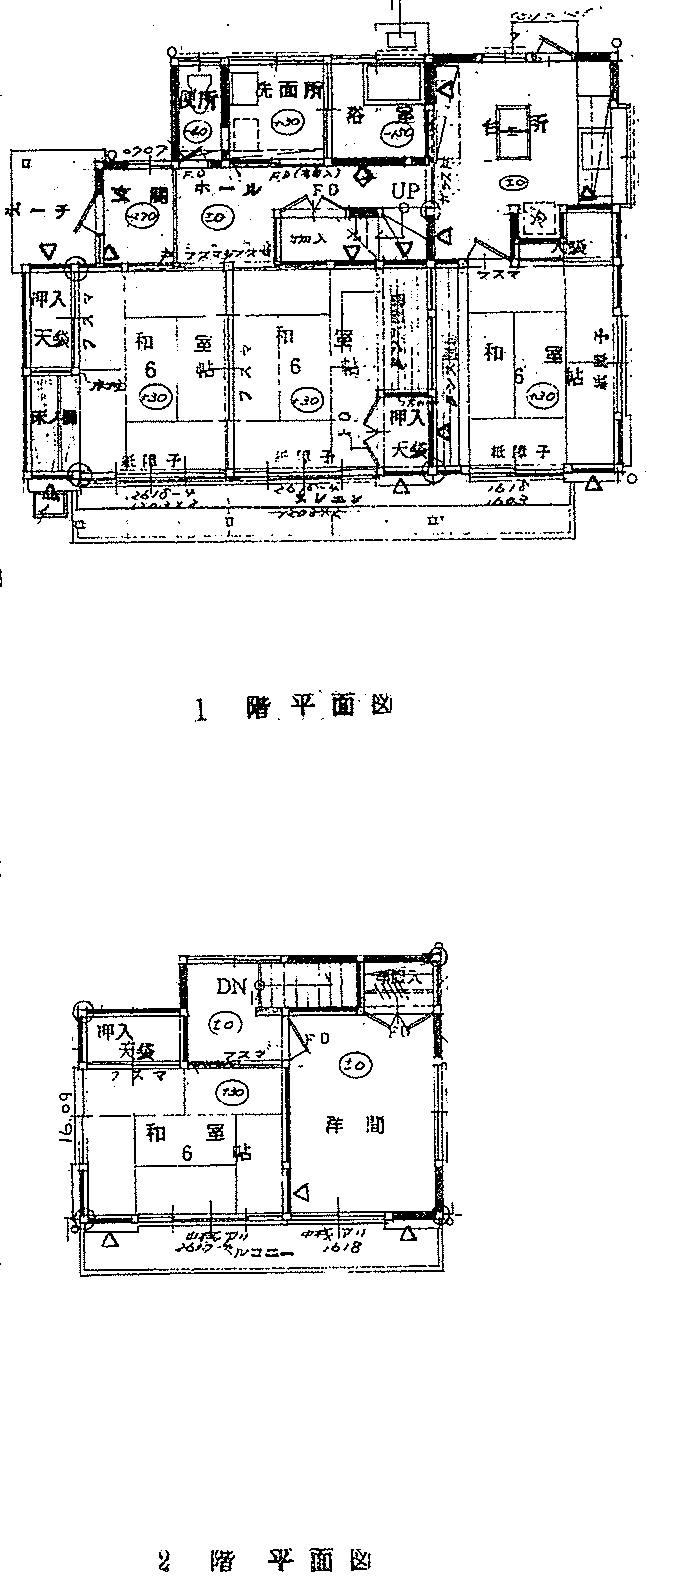 Floor plan. 7.6 million yen, 5DK, Land area 228.94 sq m , Building area 97.1 sq m